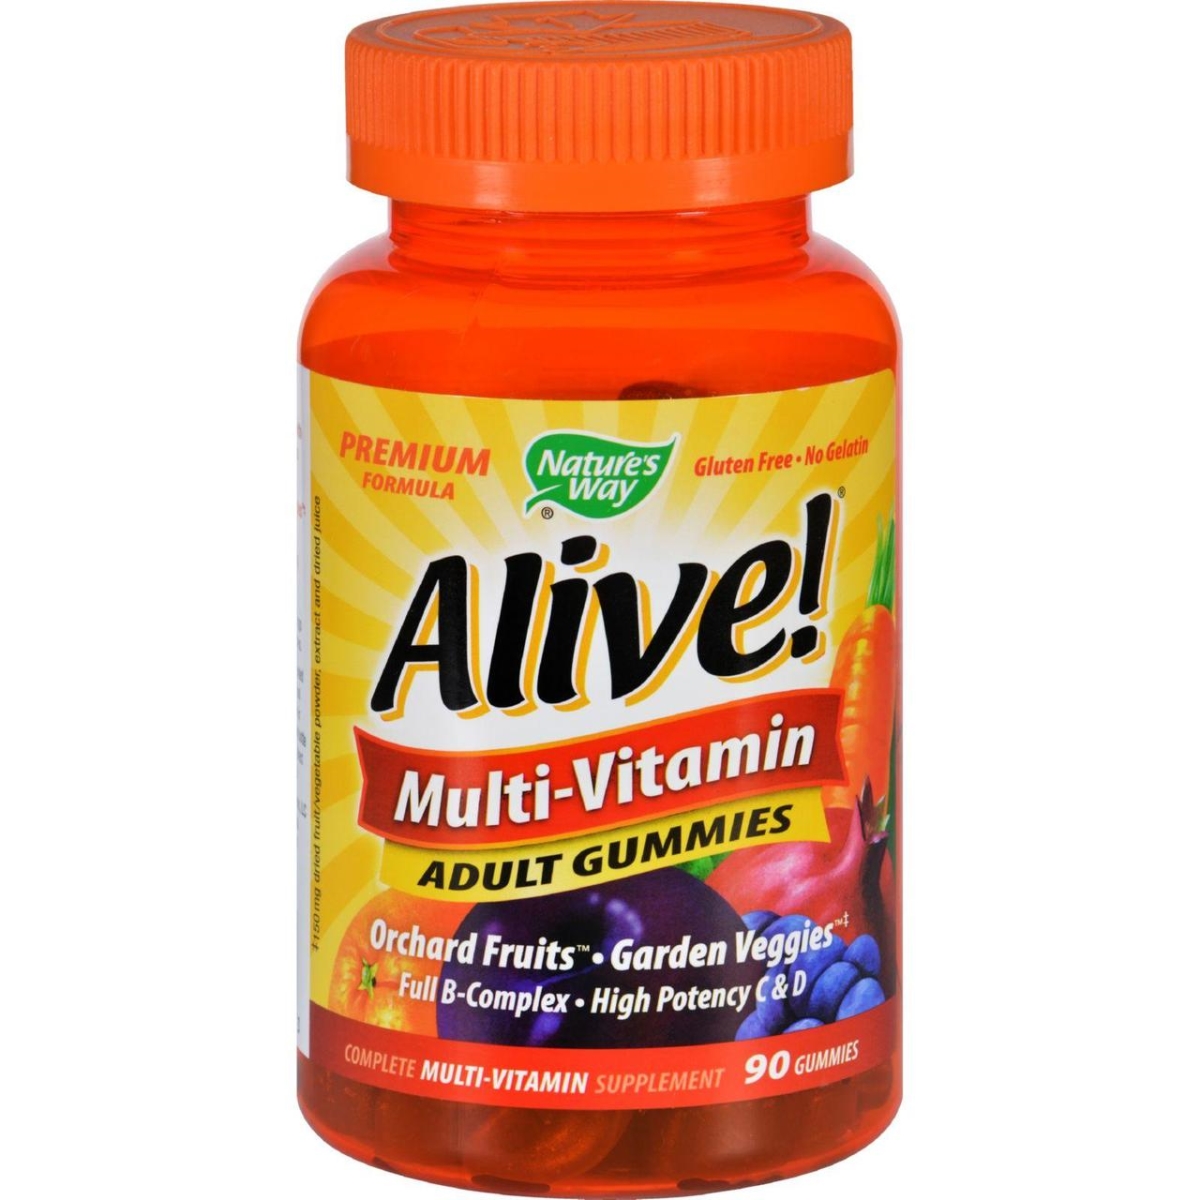 Hg1131259 Alive Multi-vitamin Adult Gummies - 90 Gummies